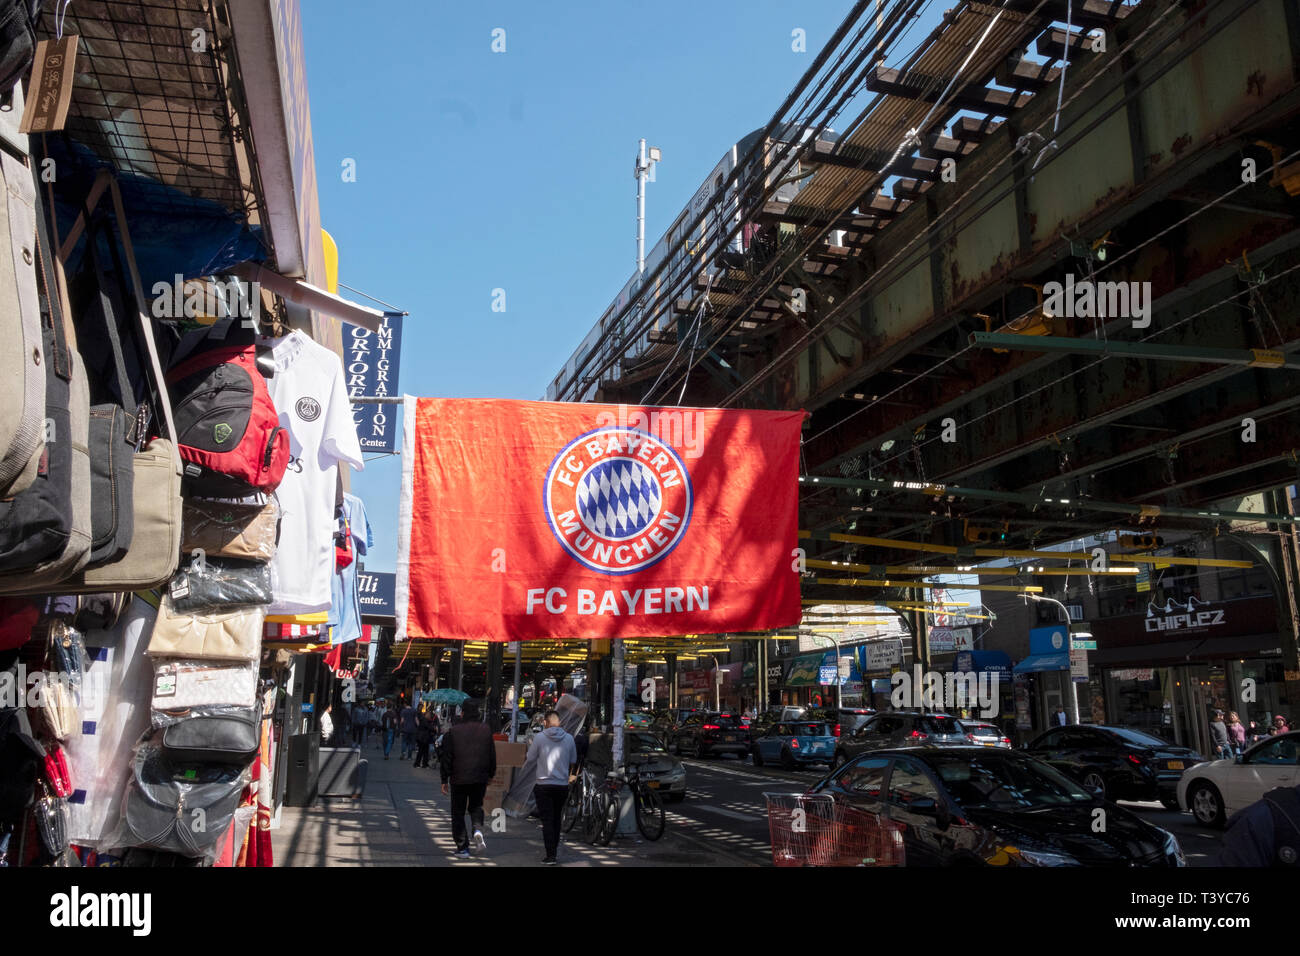 Ein großes Banner für den deutschen Fußball Fußball Club FC BAYERN MÜNCHEN in einem Speicher auf Roosevelt Ave. in der Corona, Queens, New York City hängt. Stockfoto